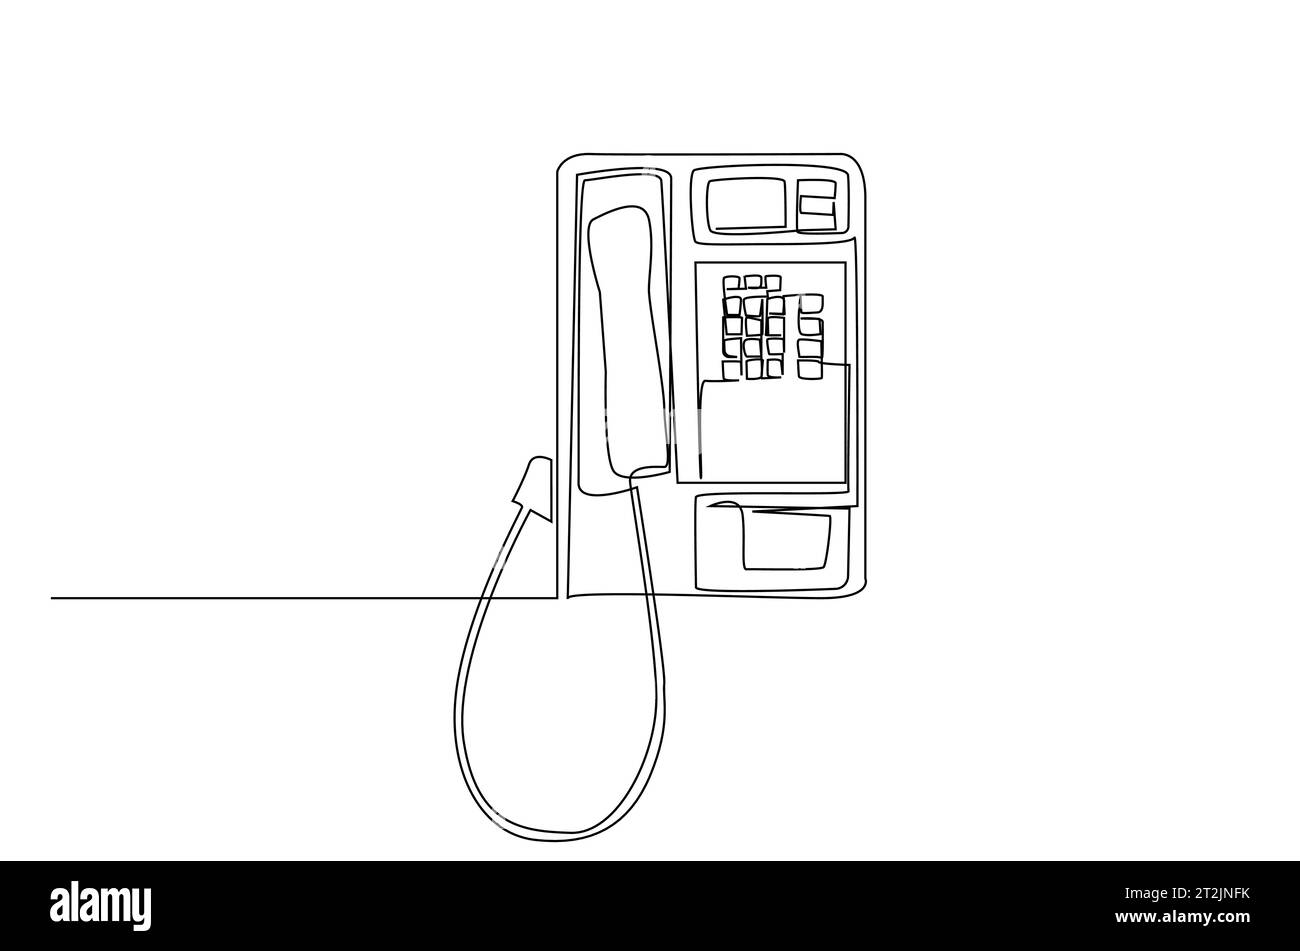 conception d'art de ligne de gadget d'objet de communication classique vieux téléphone Illustration de Vecteur